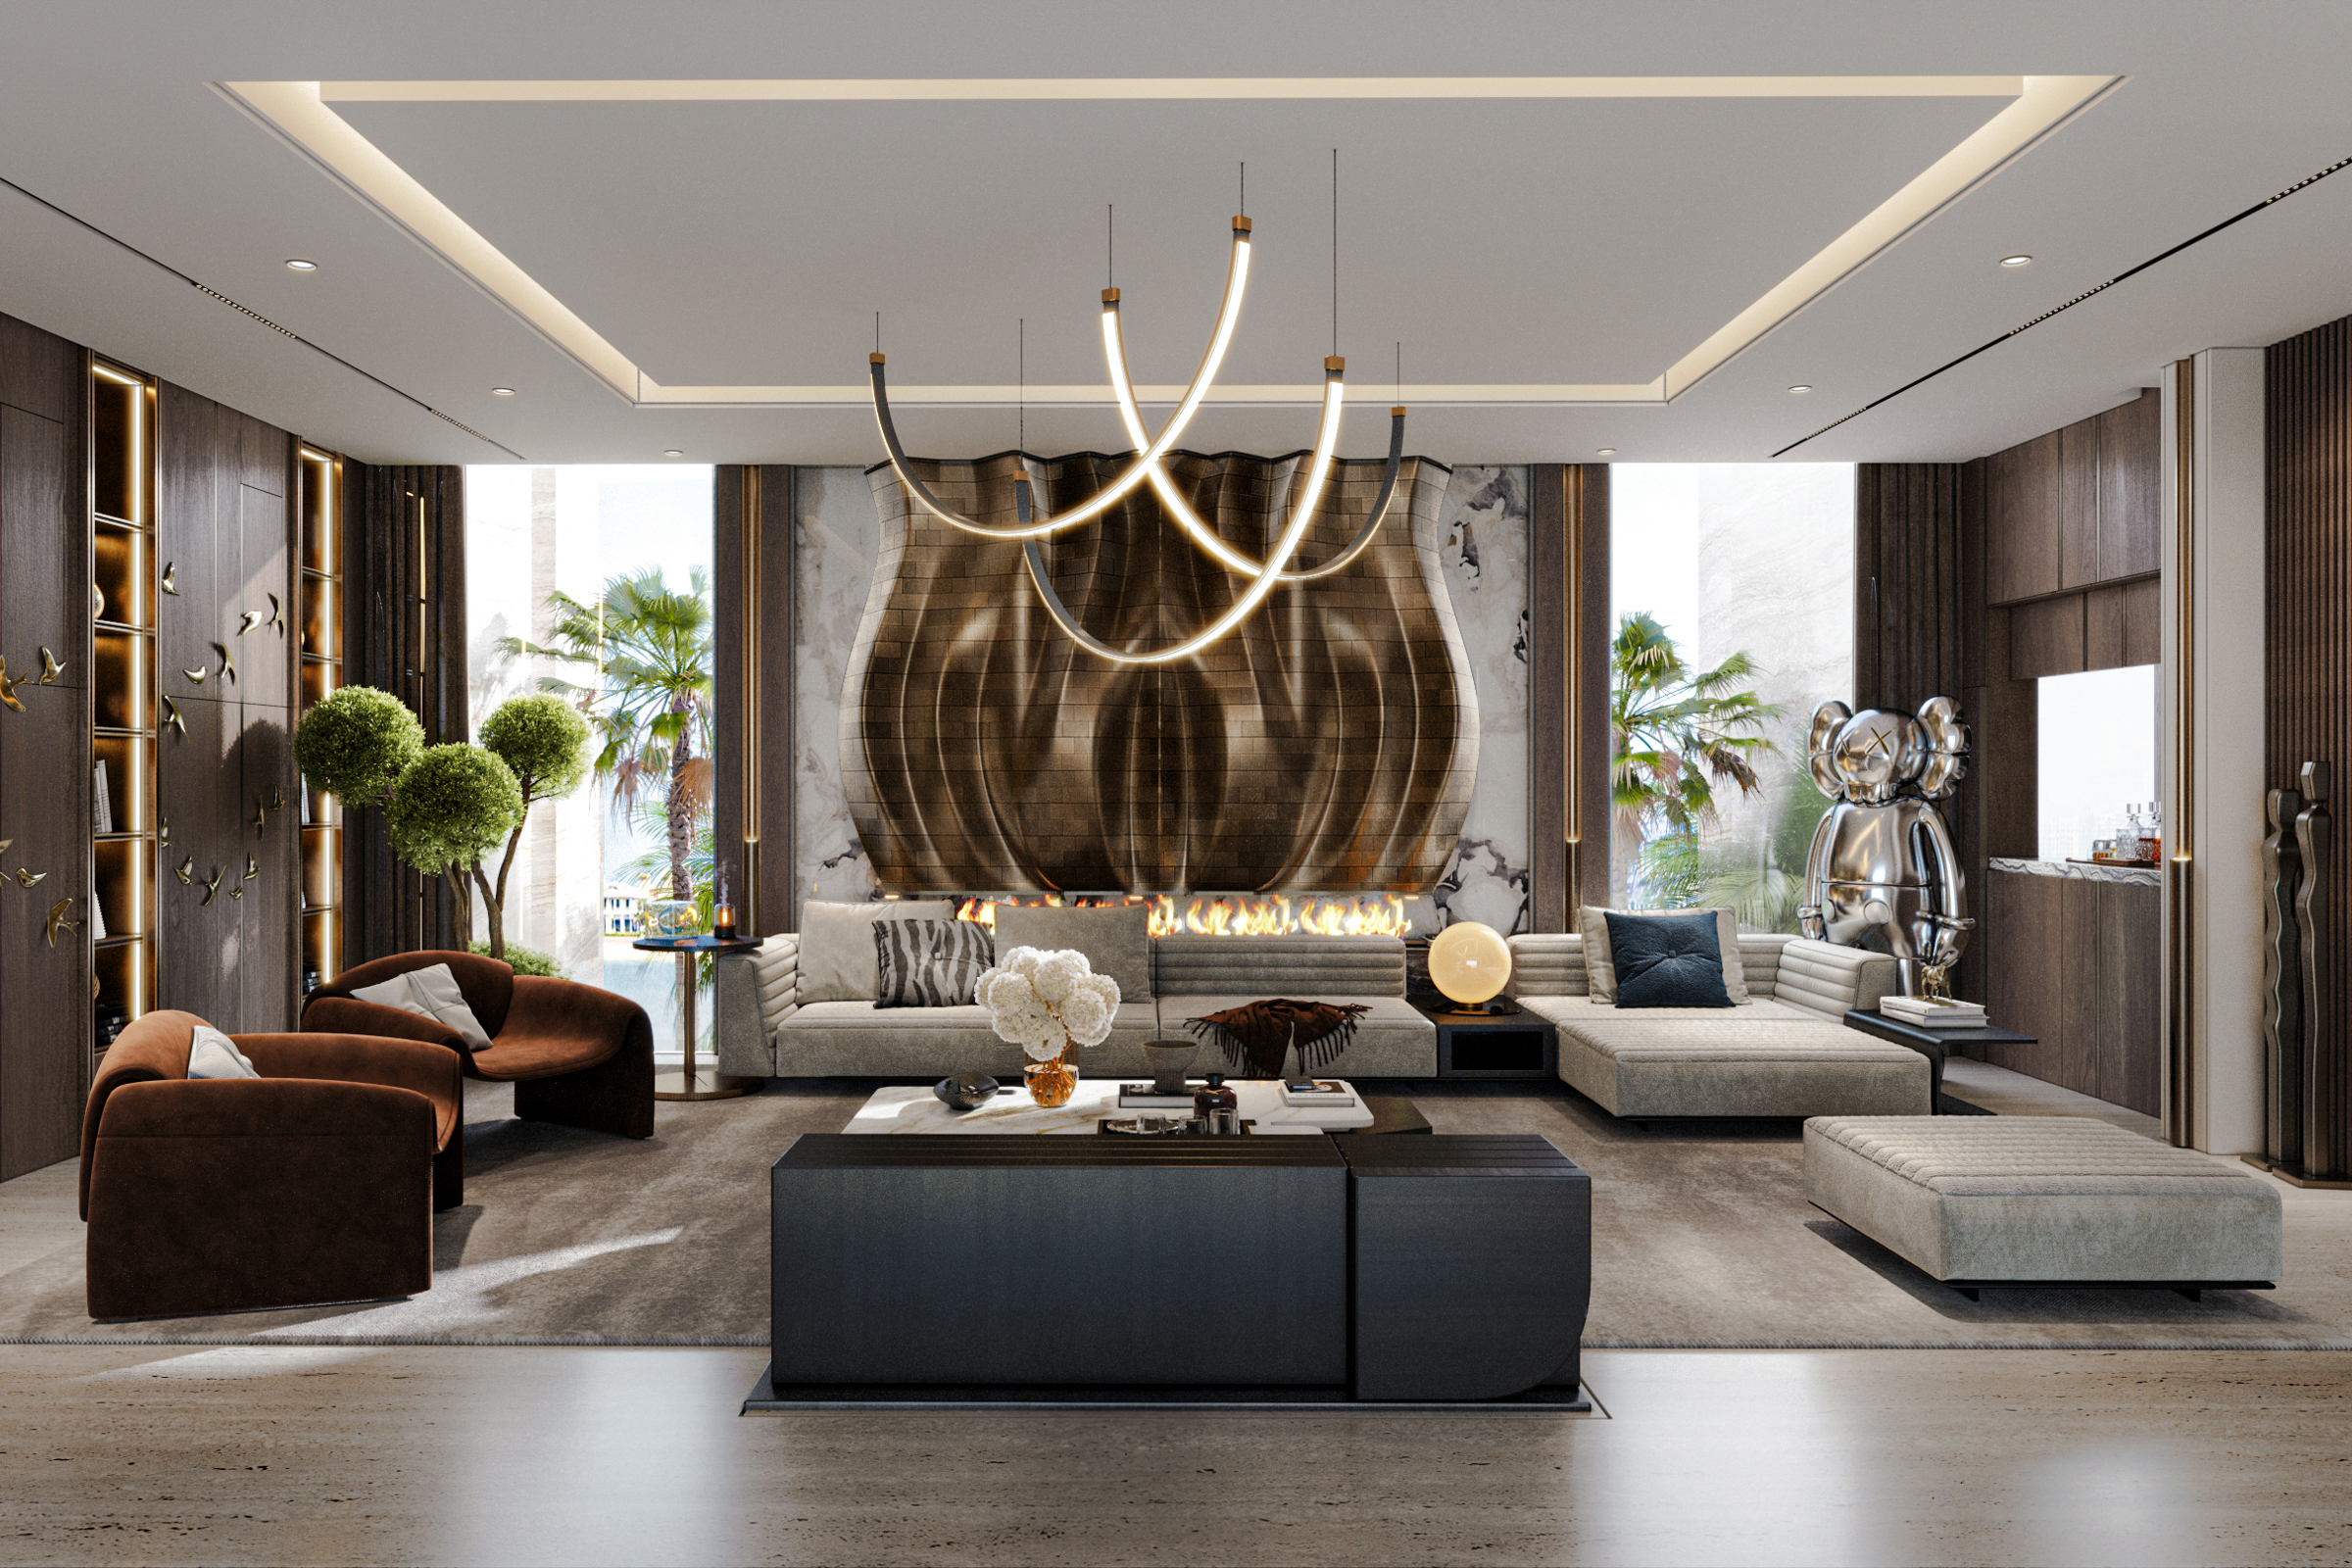 Luxury villa on Palm Jumeirah